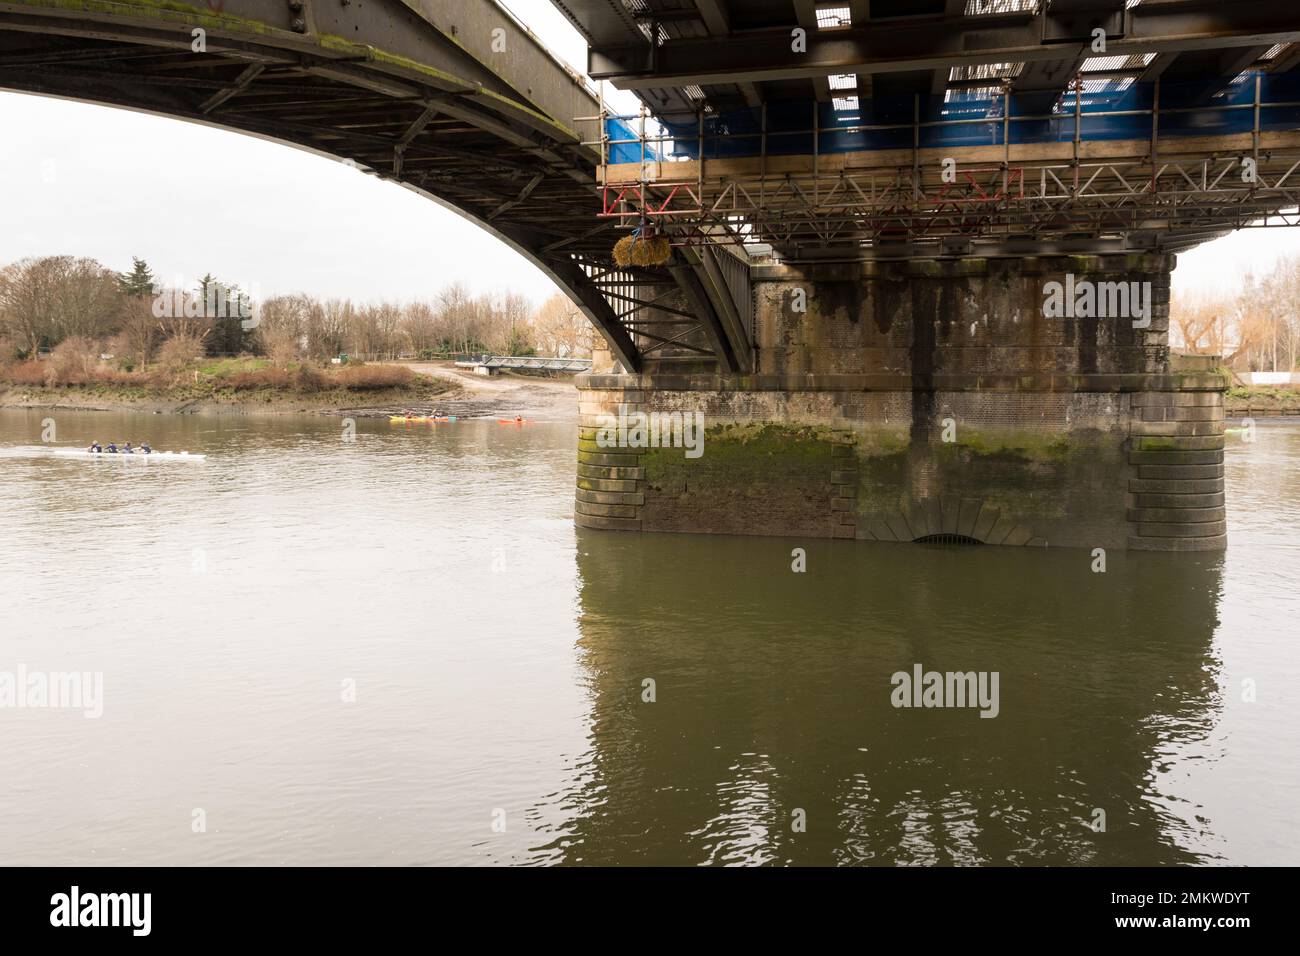 Ein Strohballen hängt unter der Barnes Bridge, um Flussfahrzeuge vor einer Änderung der Höhe und des Abstands der Brücke aufgrund von Bauarbeiten zu warnen Stockfoto